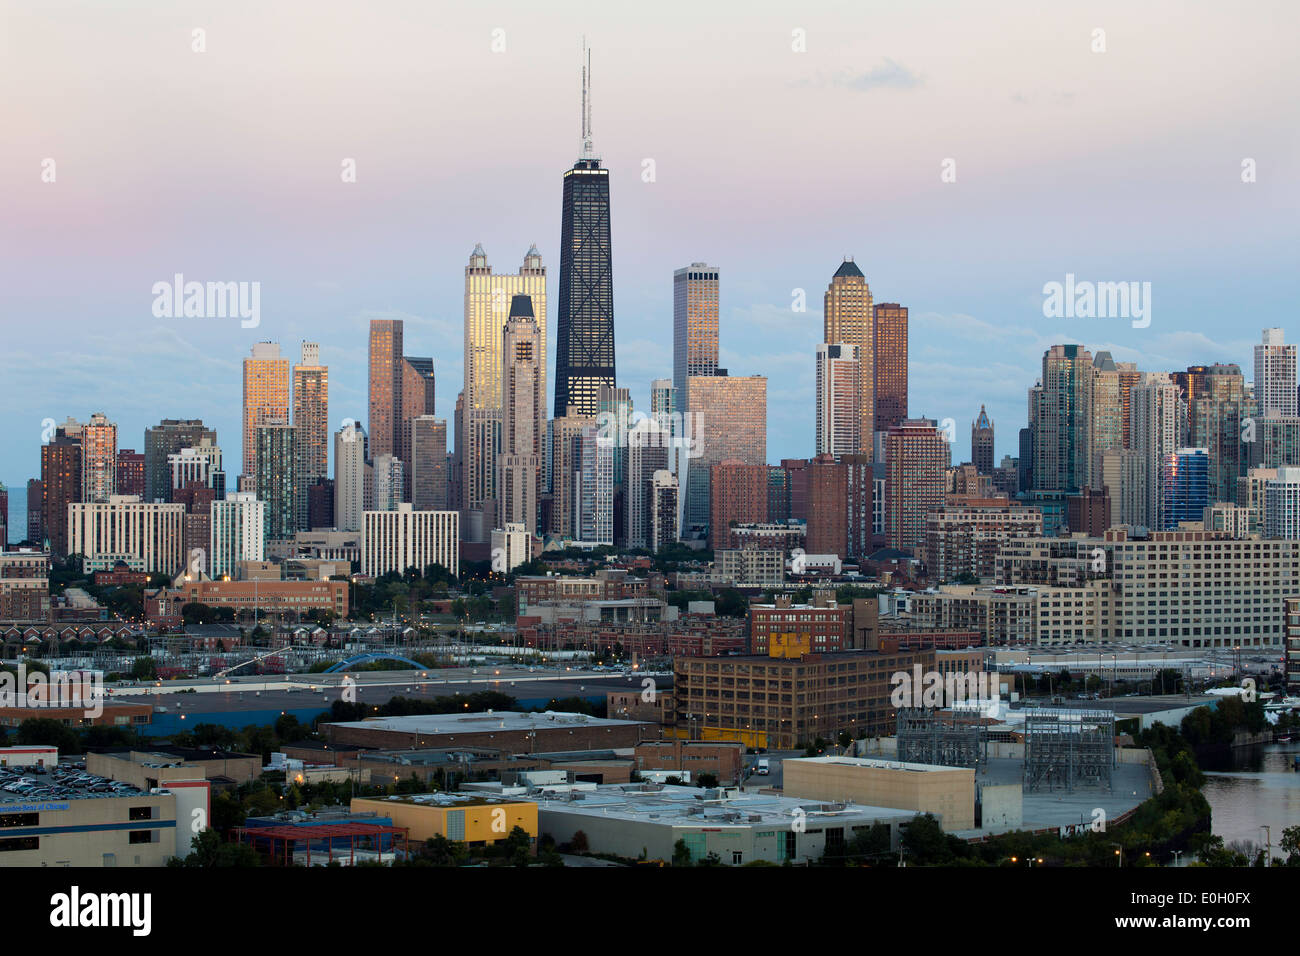 Chicago, Illinois, États-Unis d'Amérique, Hancock Tower et sur les toits de la ville Banque D'Images